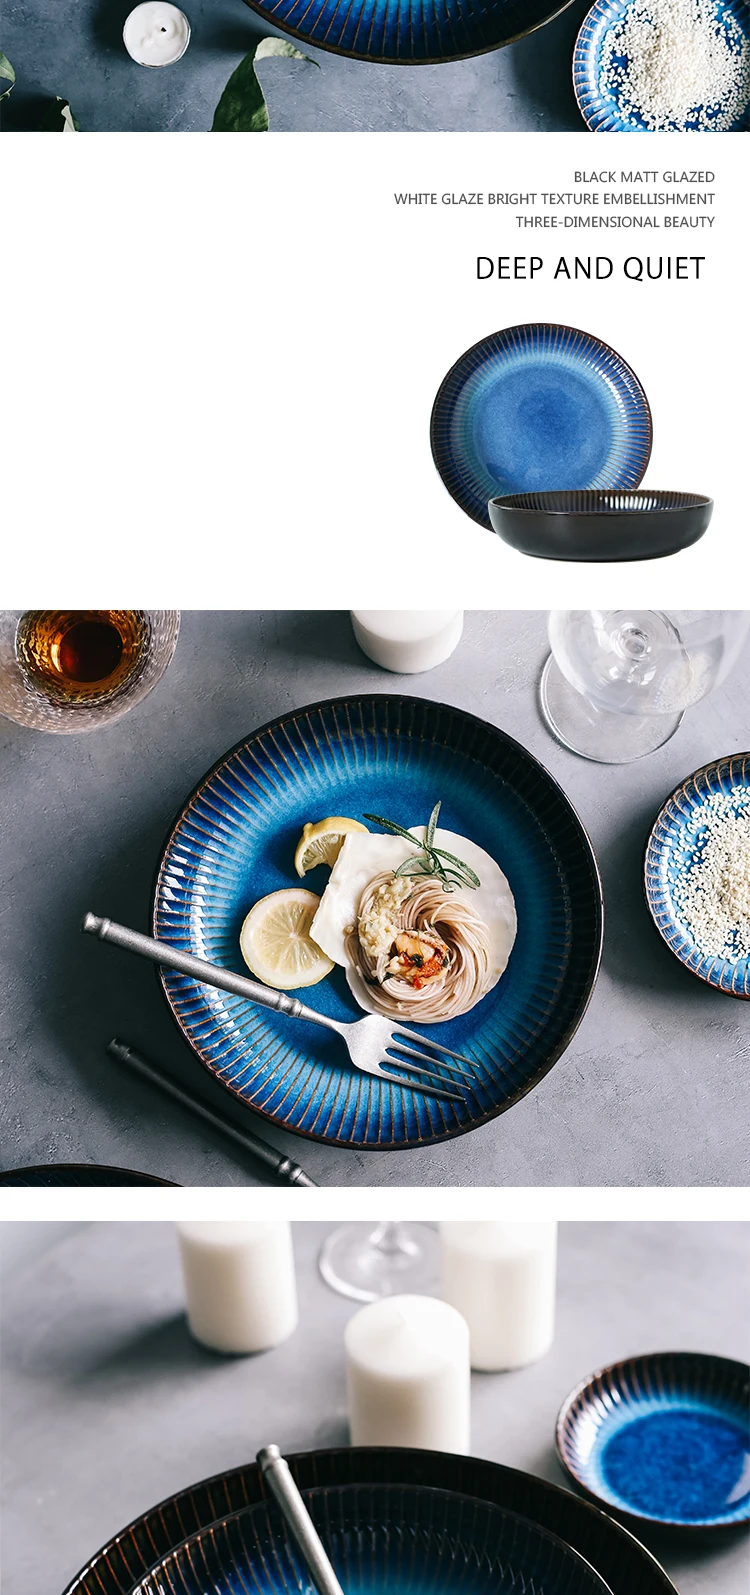 RUX WORKSHOP Japanese Western Ceramic Plate Steak dish Round breakfast plate Blue kitchen dining tableware Cake dessert plate